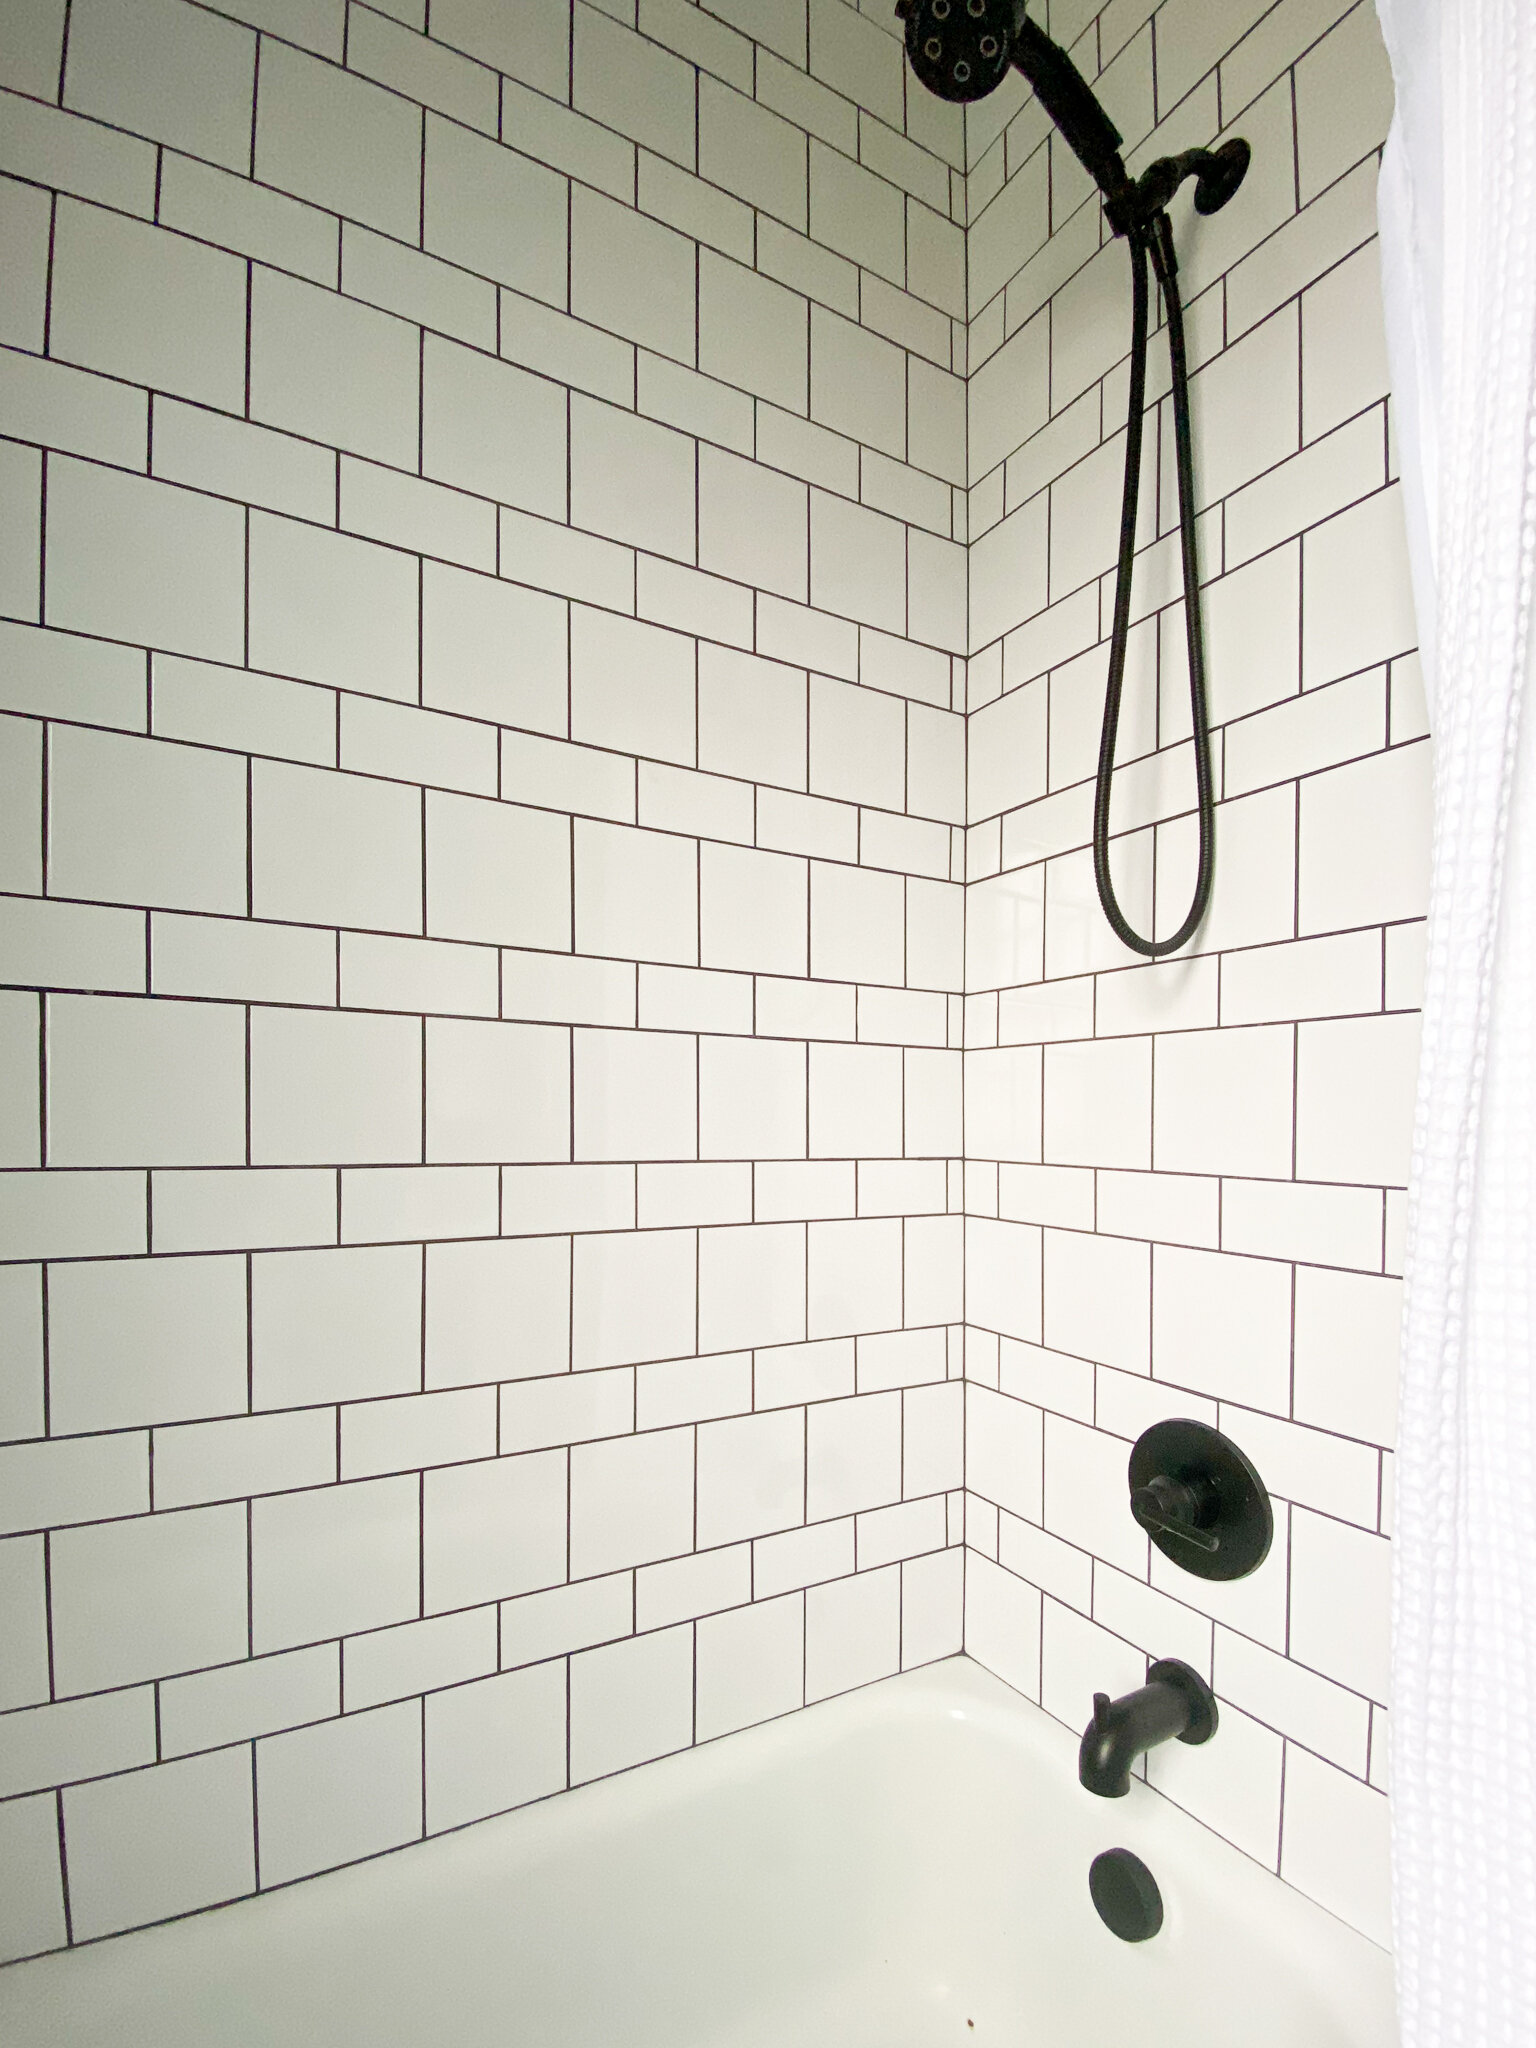 Historic Bathroom Tile Designs Orc, Vintage Bathroom Floor Tile Ideas